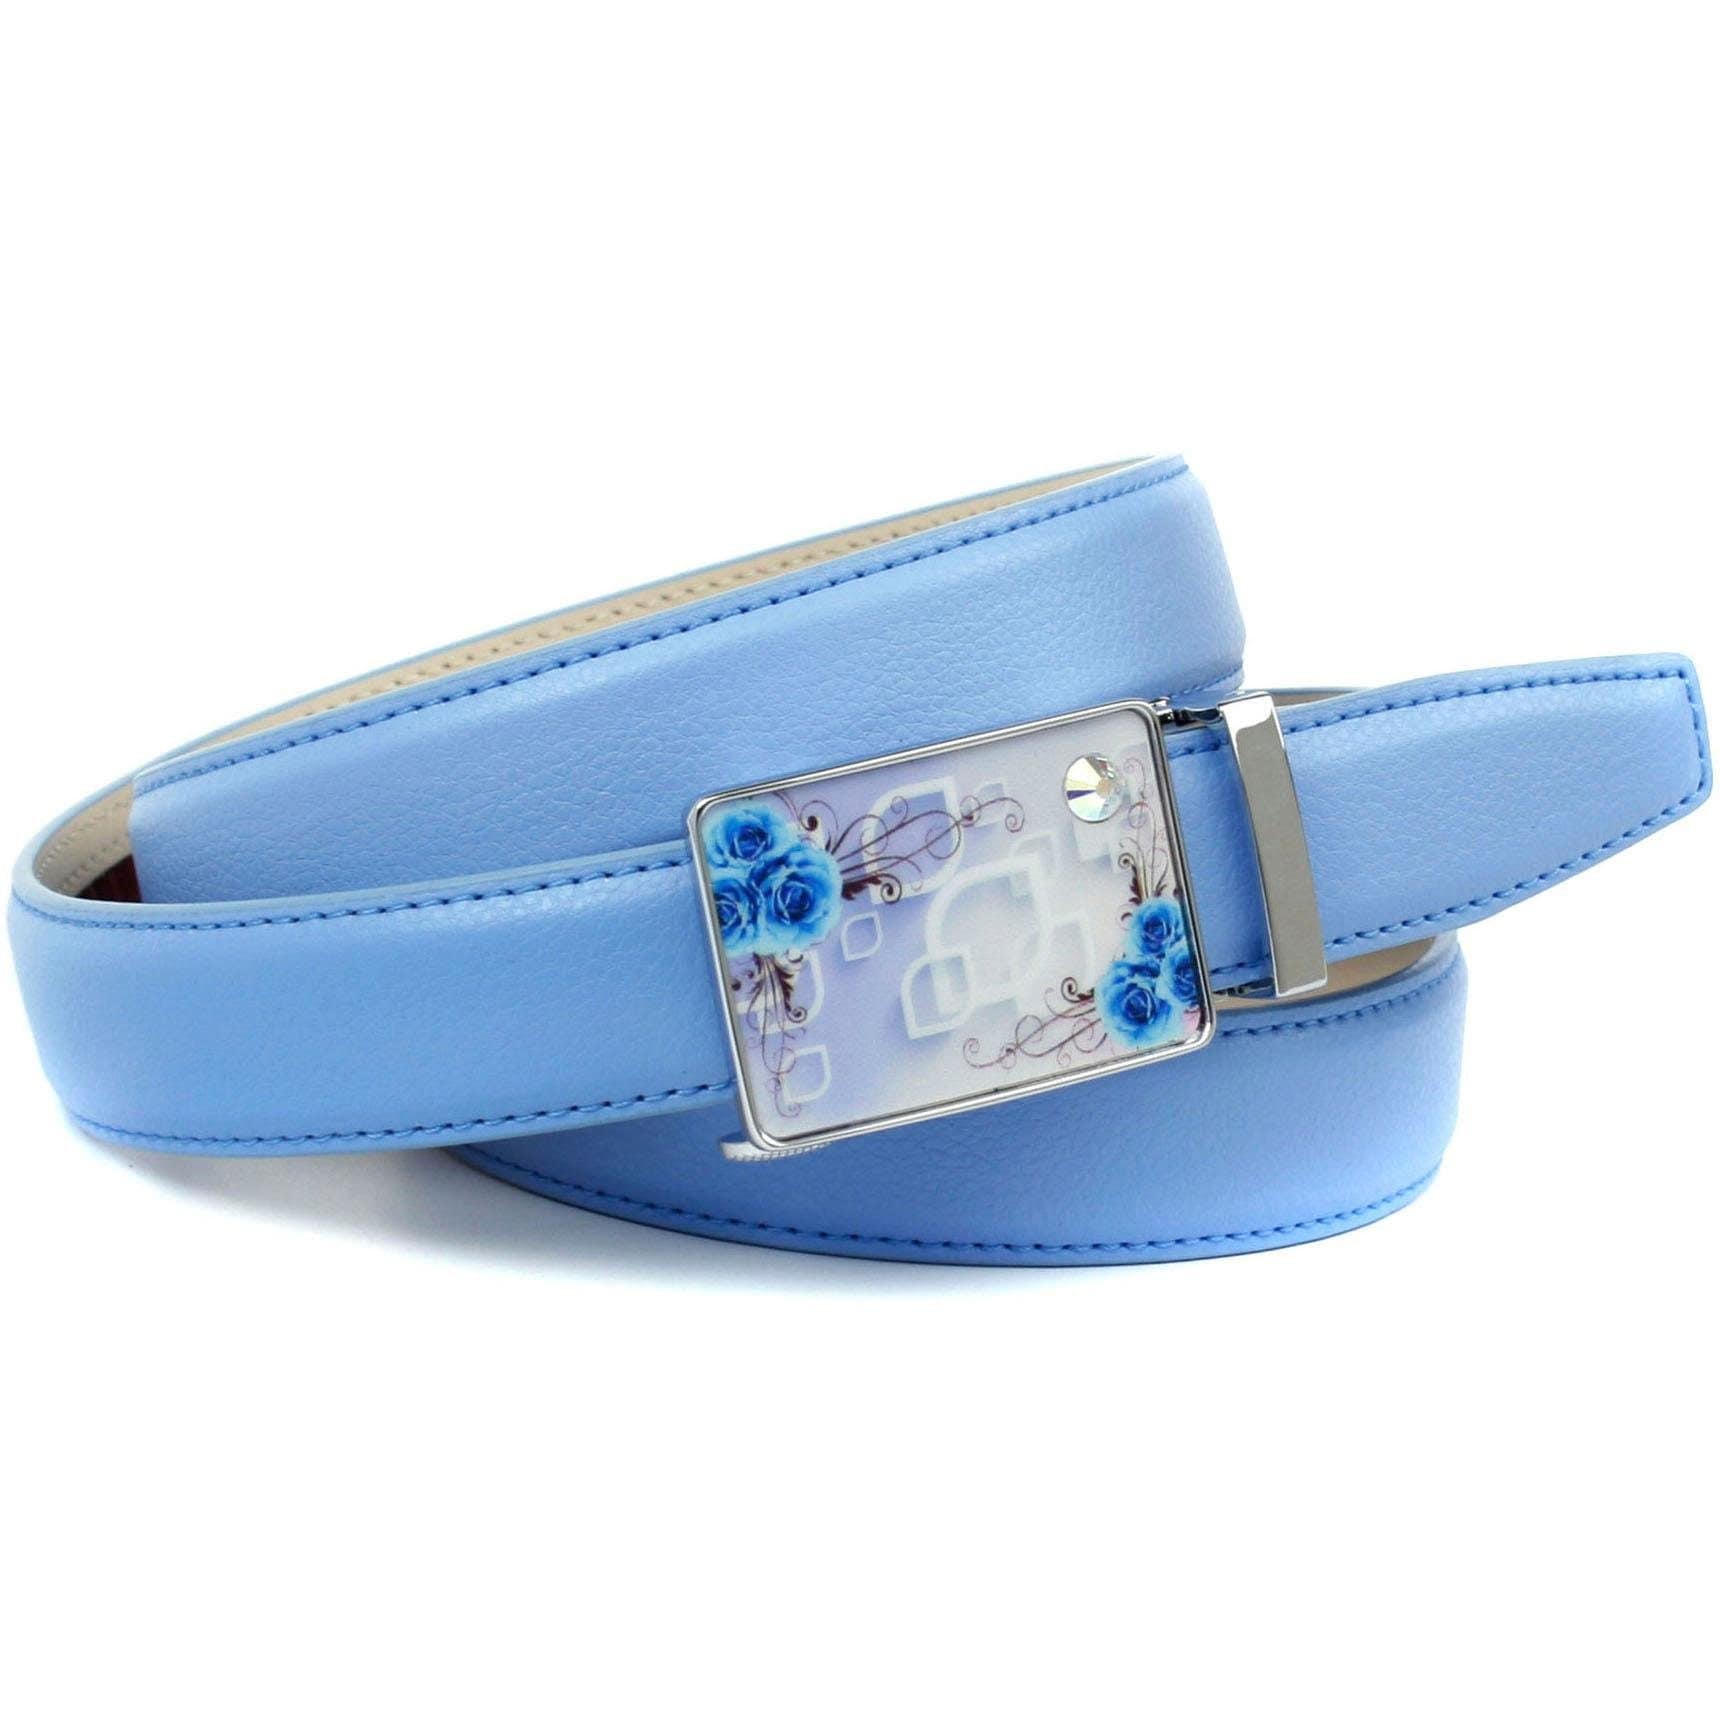 Anthoni Crown Ledergürtel stilvoll in hellblau mit silberfarbener Schließe | Anzuggürtel